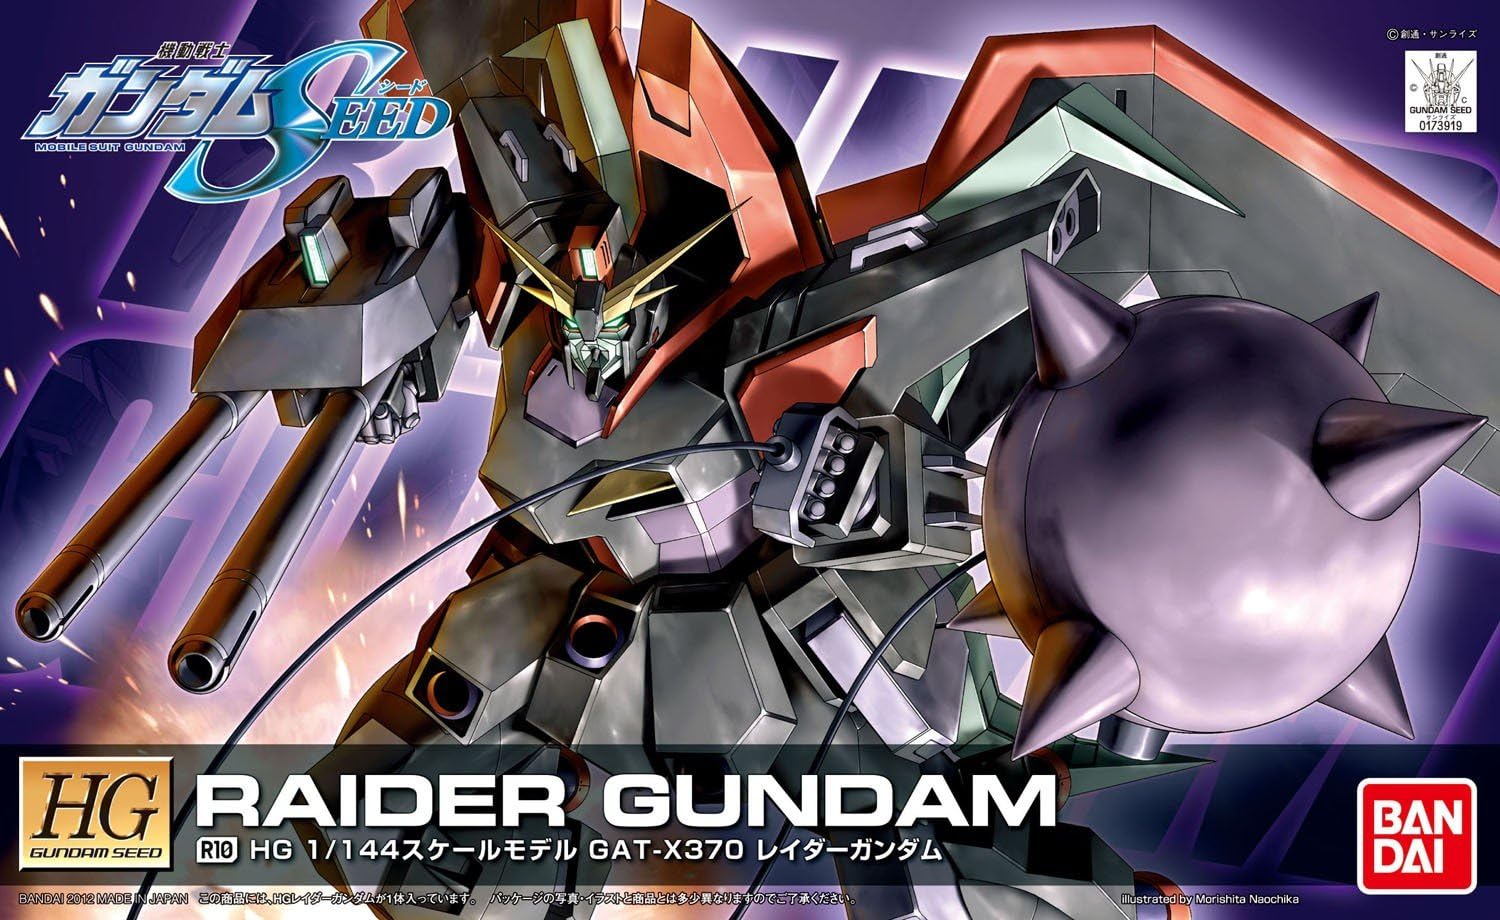 1/144 "Gundam SEED" HG R10 Rader Gundam | animota